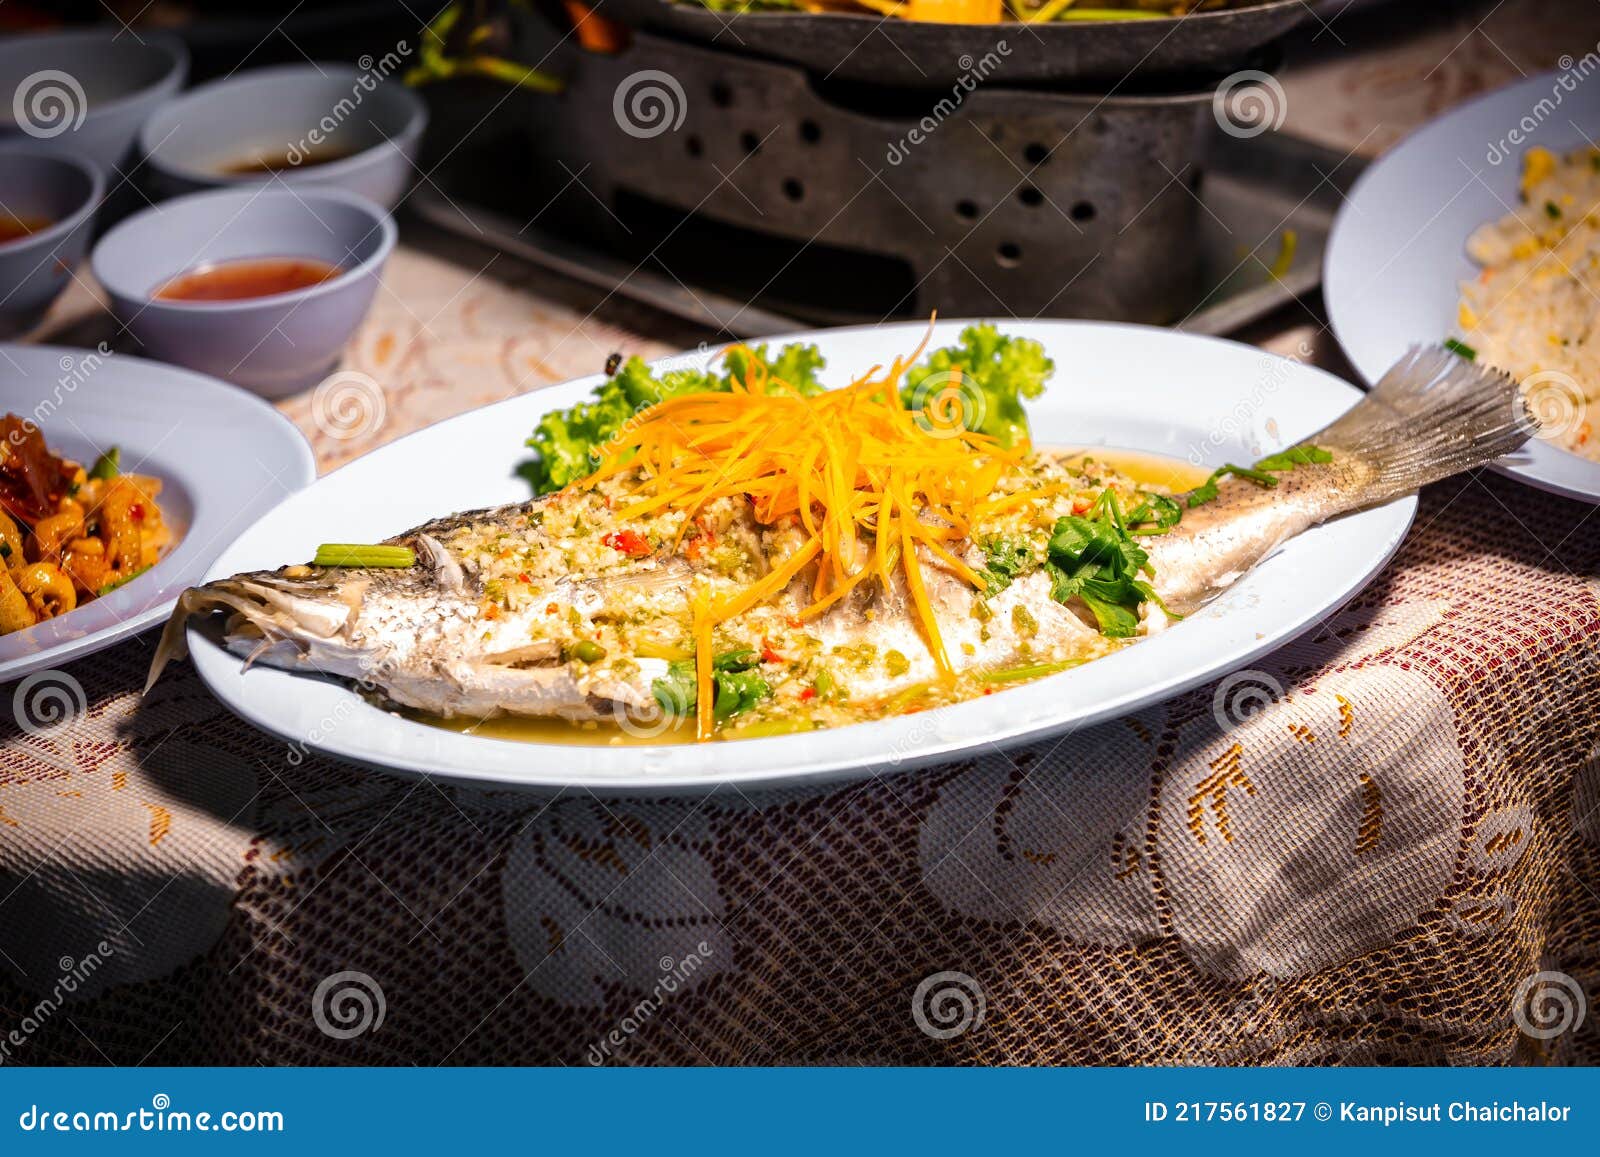 泰式清蒸柠檬鲈鱼怎么做_泰式清蒸柠檬鲈鱼的做法_豆果美食